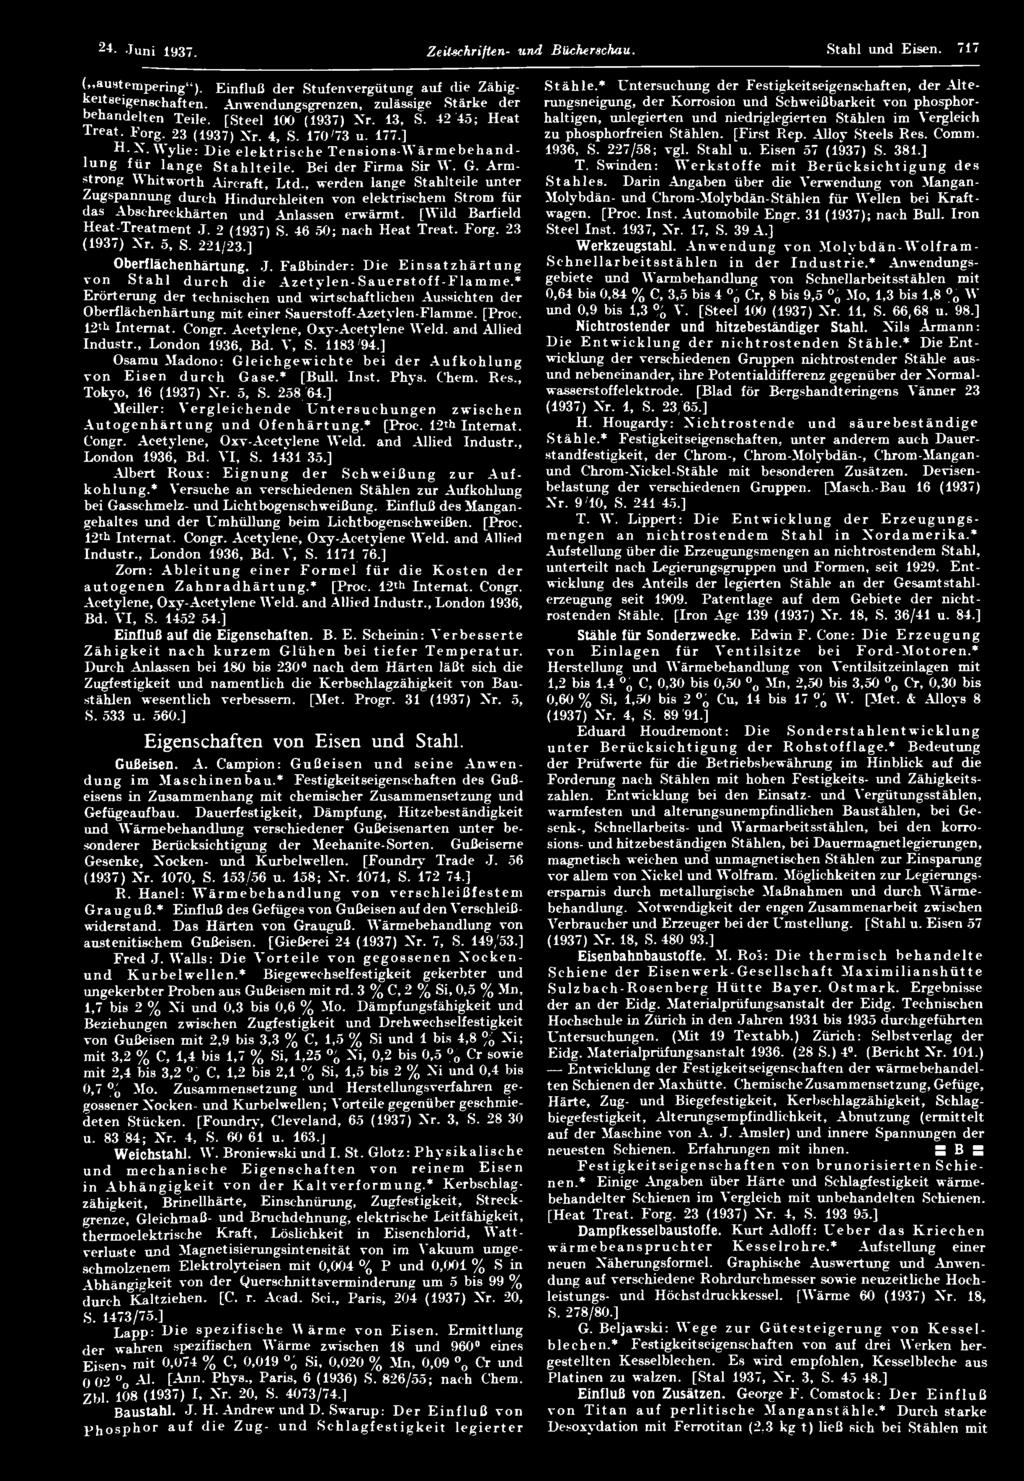 [Seel 100 (1937) Nr. 13, S. 42/45; Hea Trea. F org. 23 (1937) Xr. 4, S. 170/73 u. 177.] haligen, unlegieren und niedriglegieren Sählen im Vergleich zu phosphorfreien Sählen. [Firs Rep.